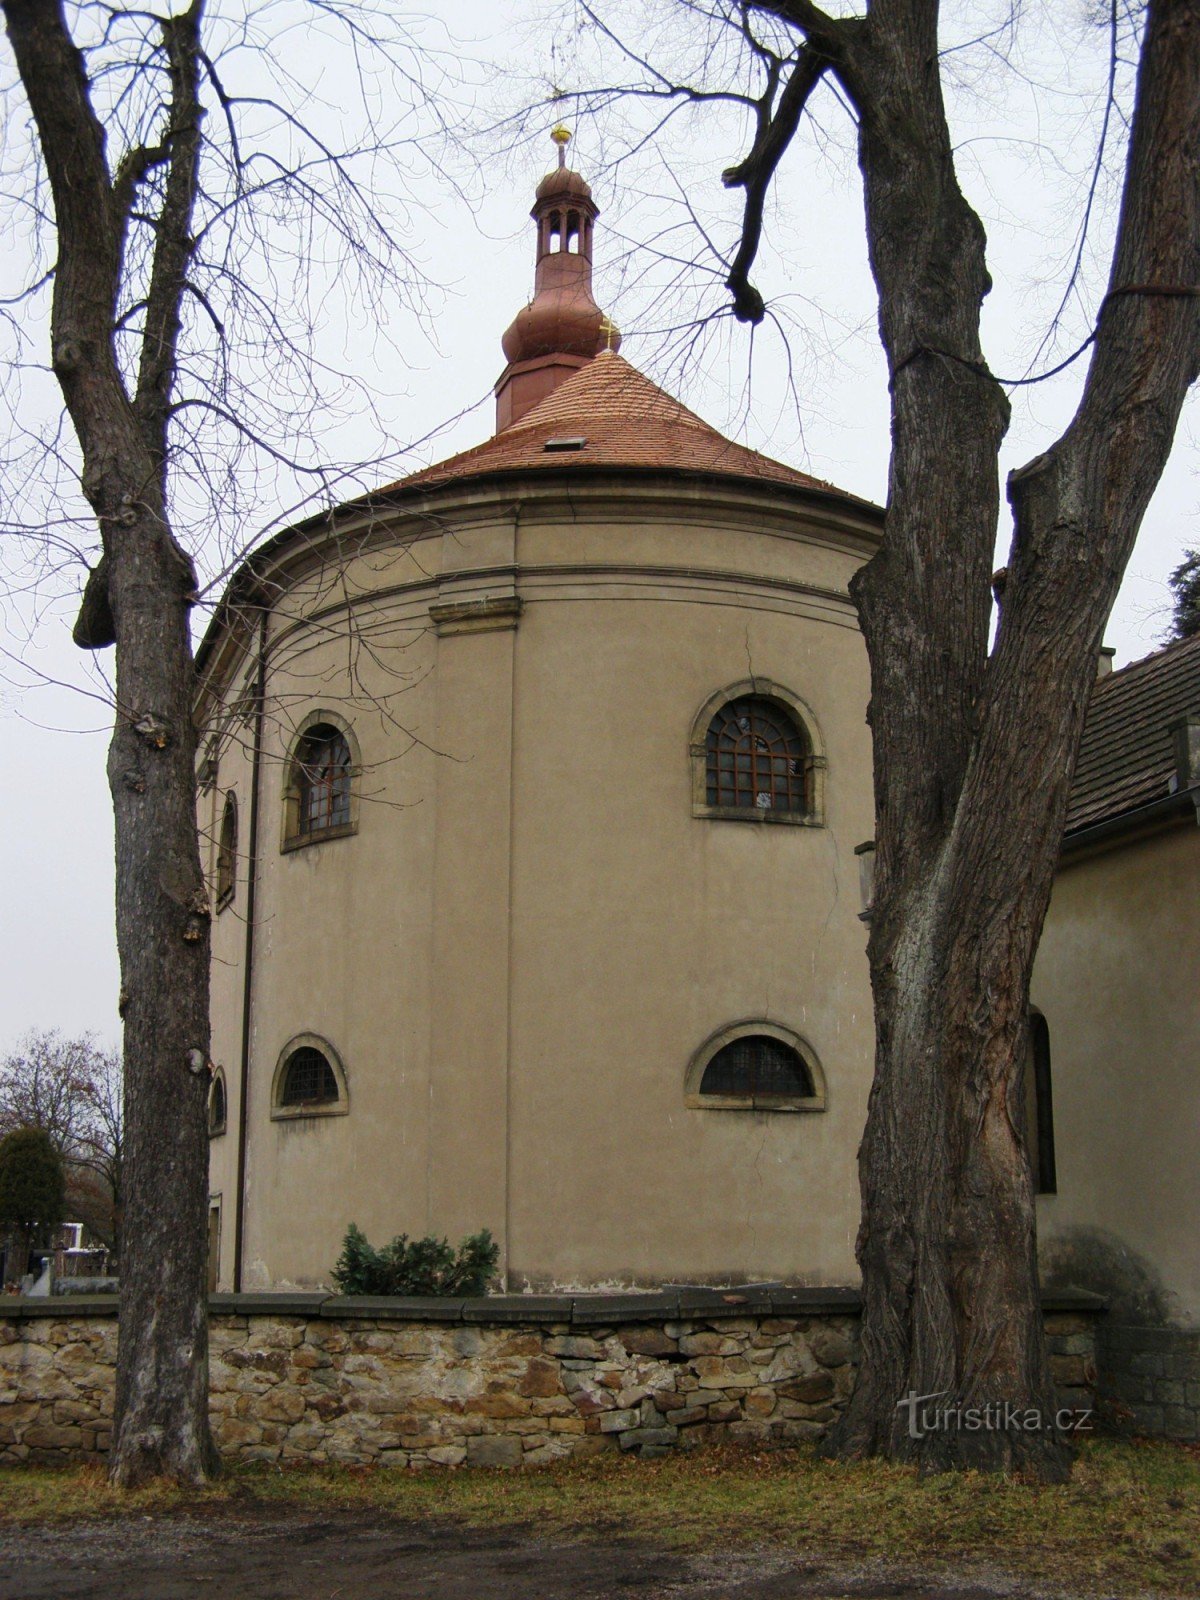 Vamberk - Chapel of St. Barbara